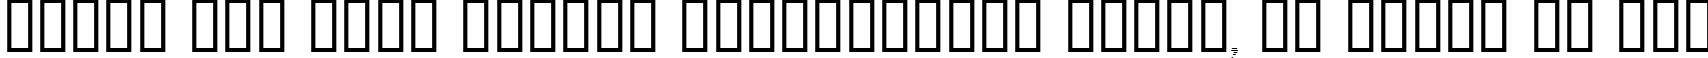 Пример написания шрифтом Dumbledor 3 Cut Up текста на русском